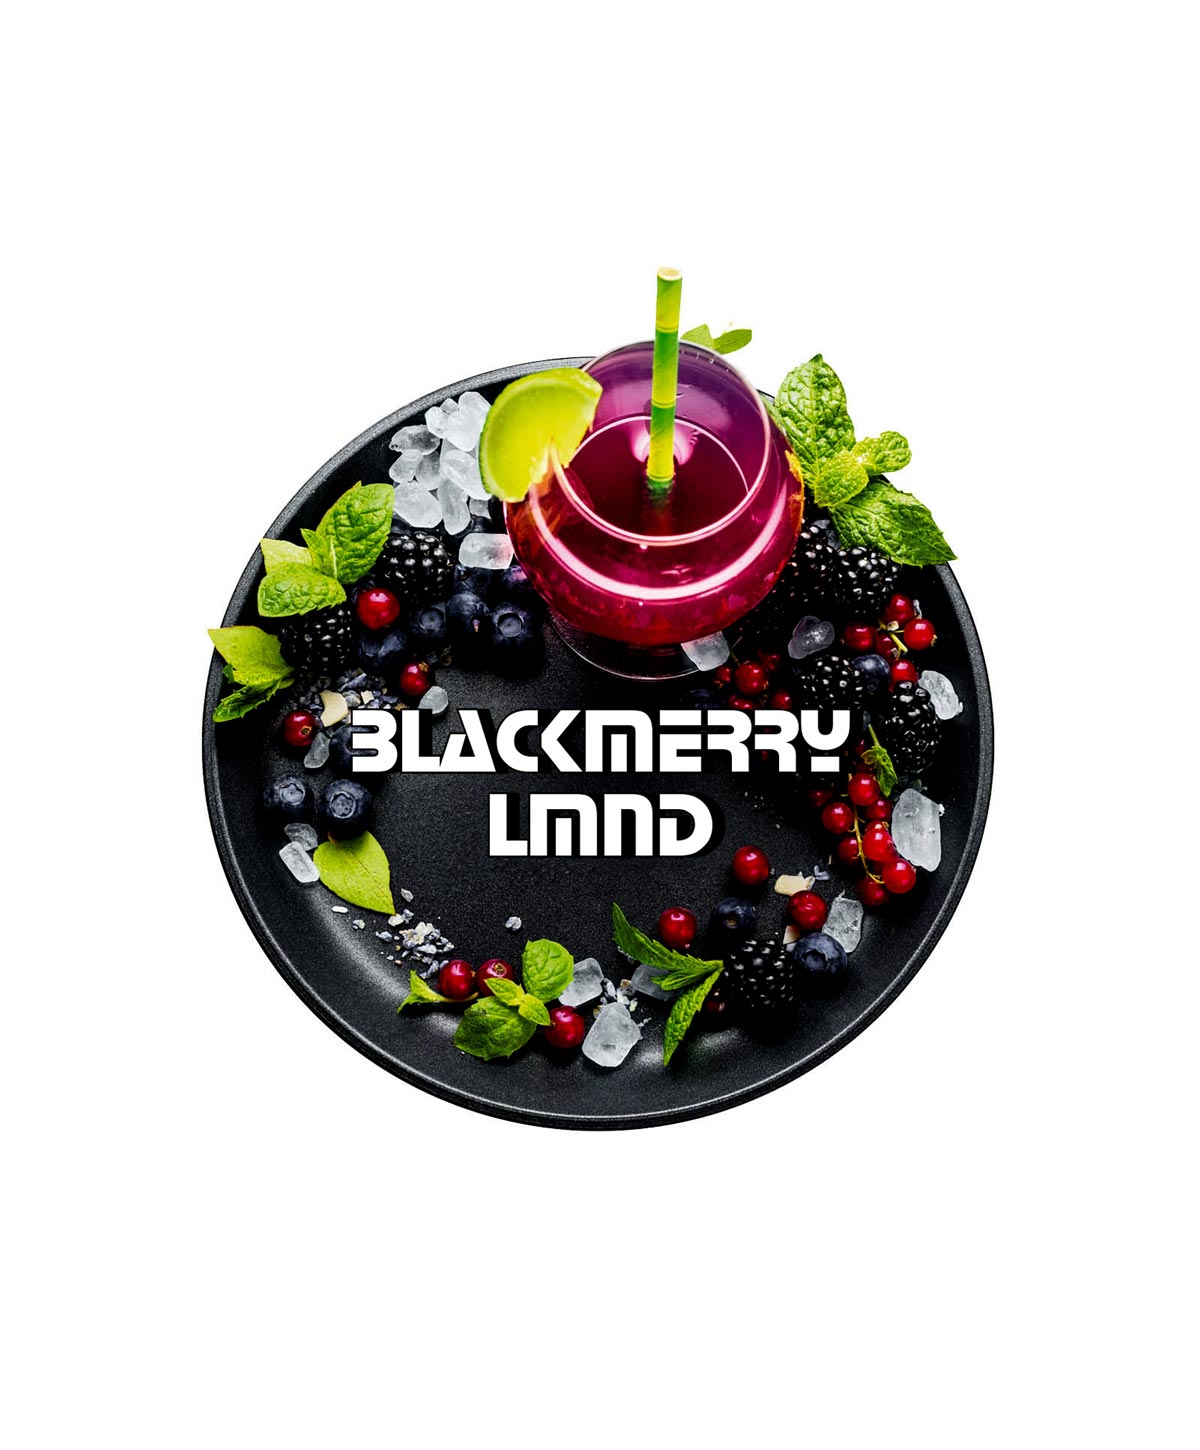 Blackburn Blackmerry Lmnd 25g Shisha Tabak